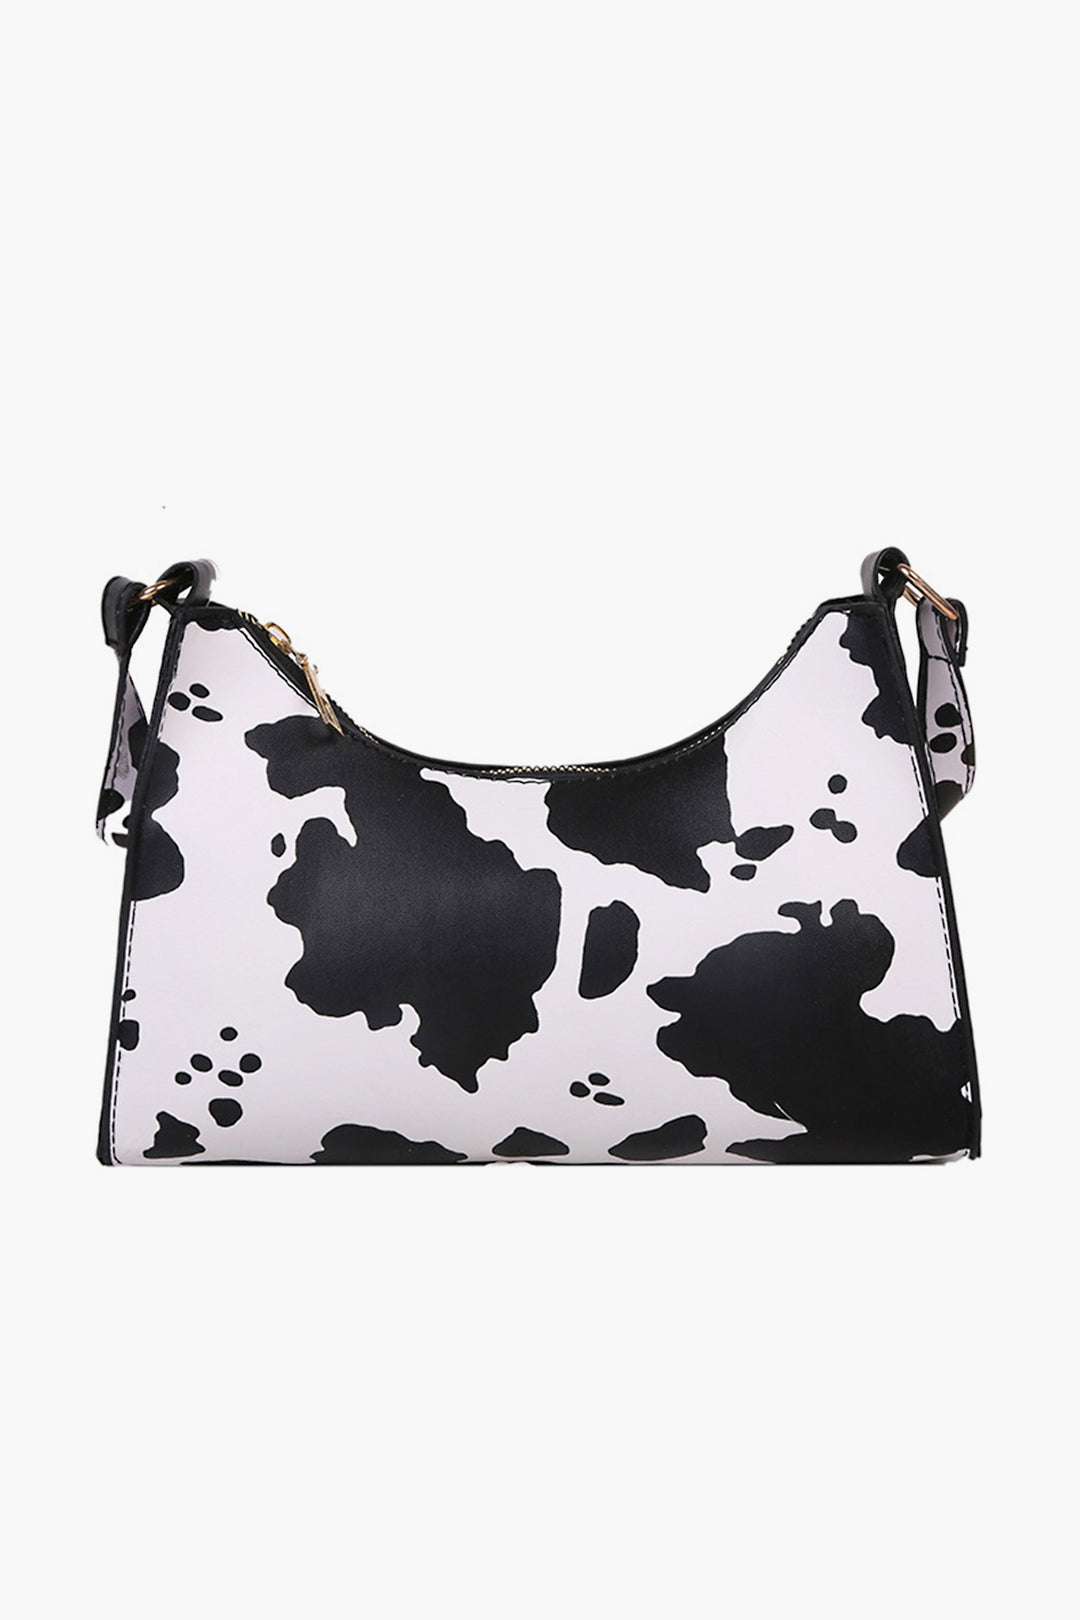 Cow Printed Handbag - P22 - WHB0004